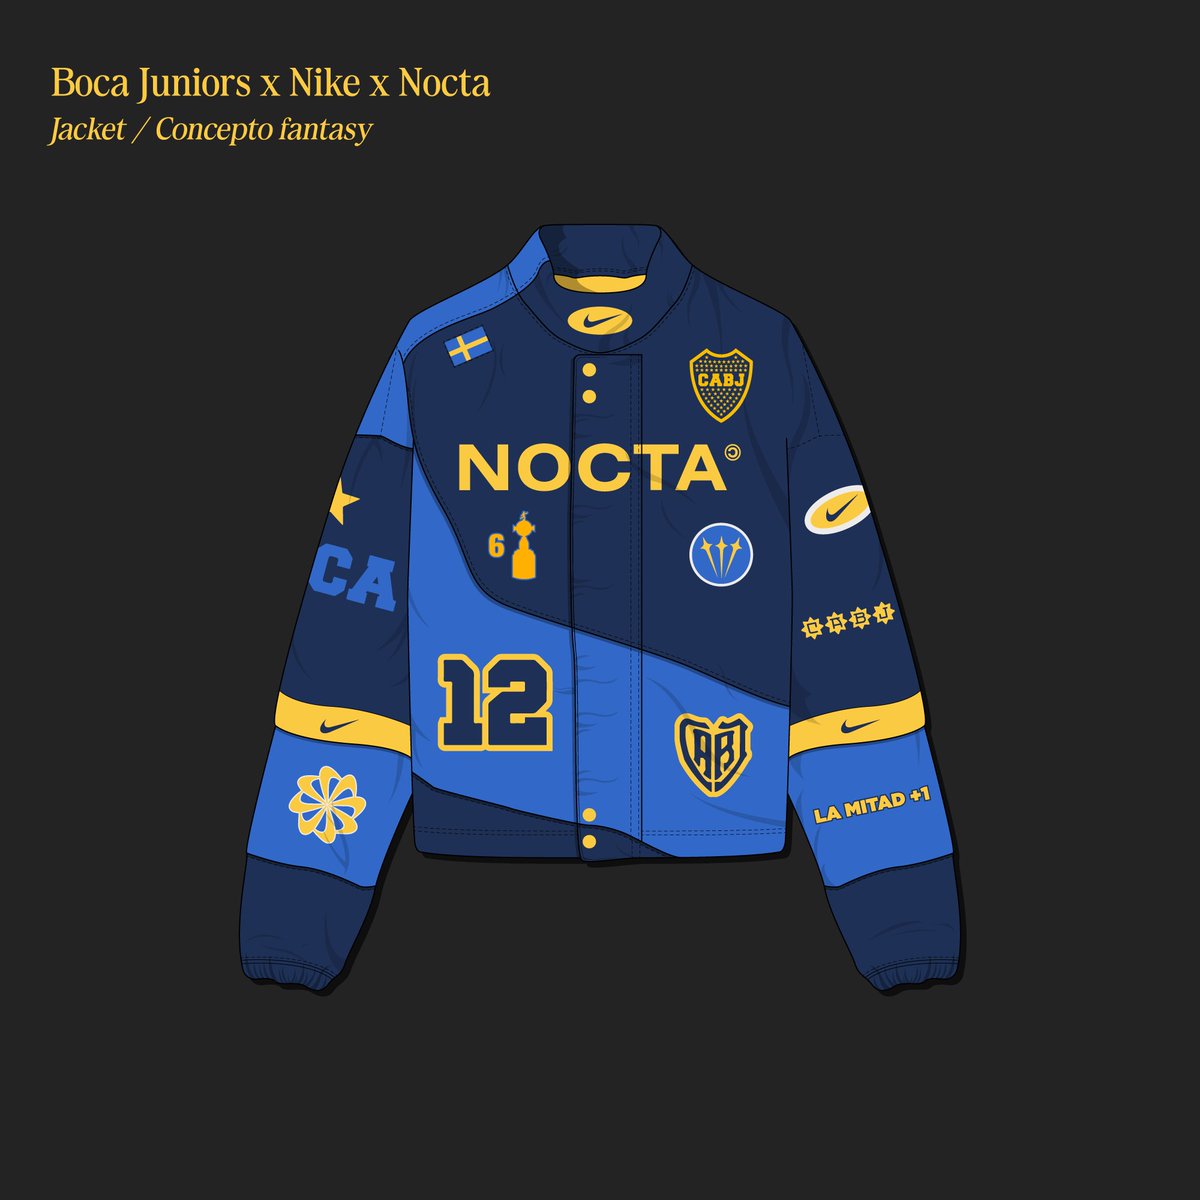 Boca Juniors x Nike x Nocta.